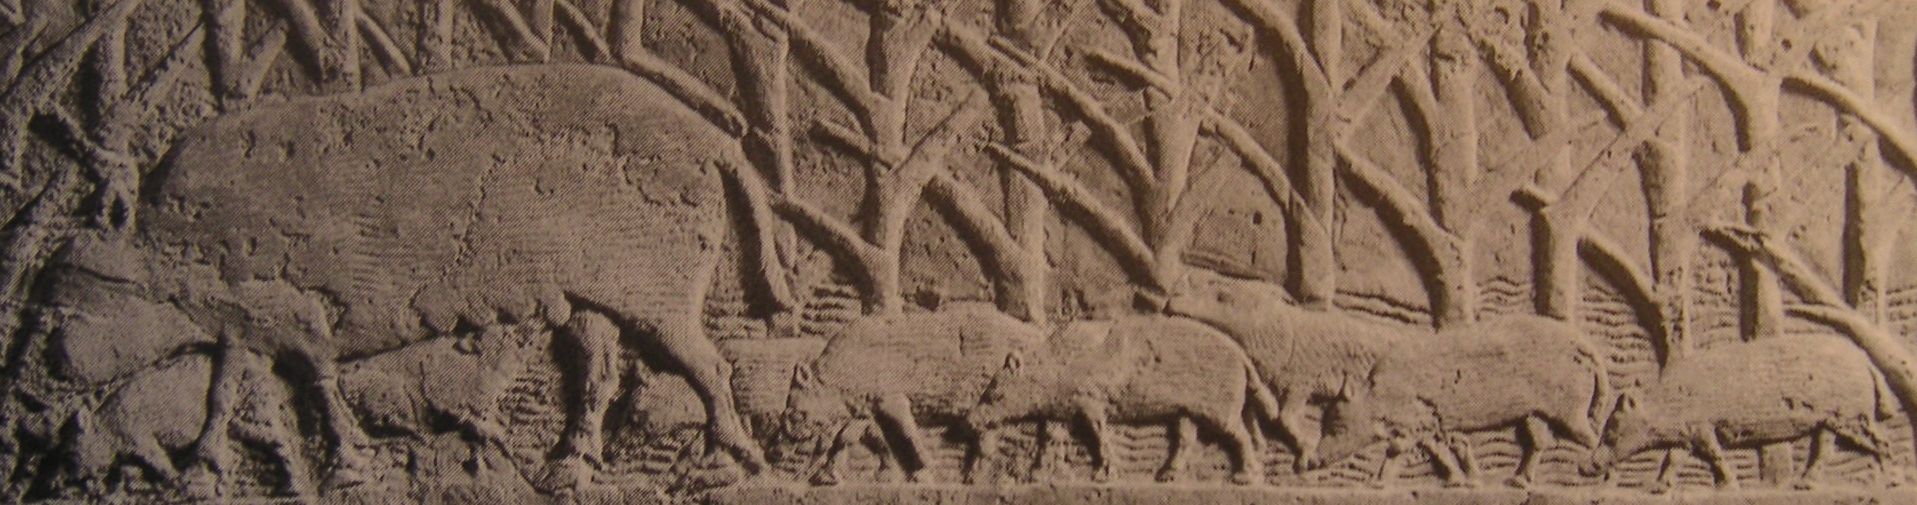 Laie dans les roseaux avec ses marcassins. Relief du palais de Ninive, VIIe s. av. J.-C.